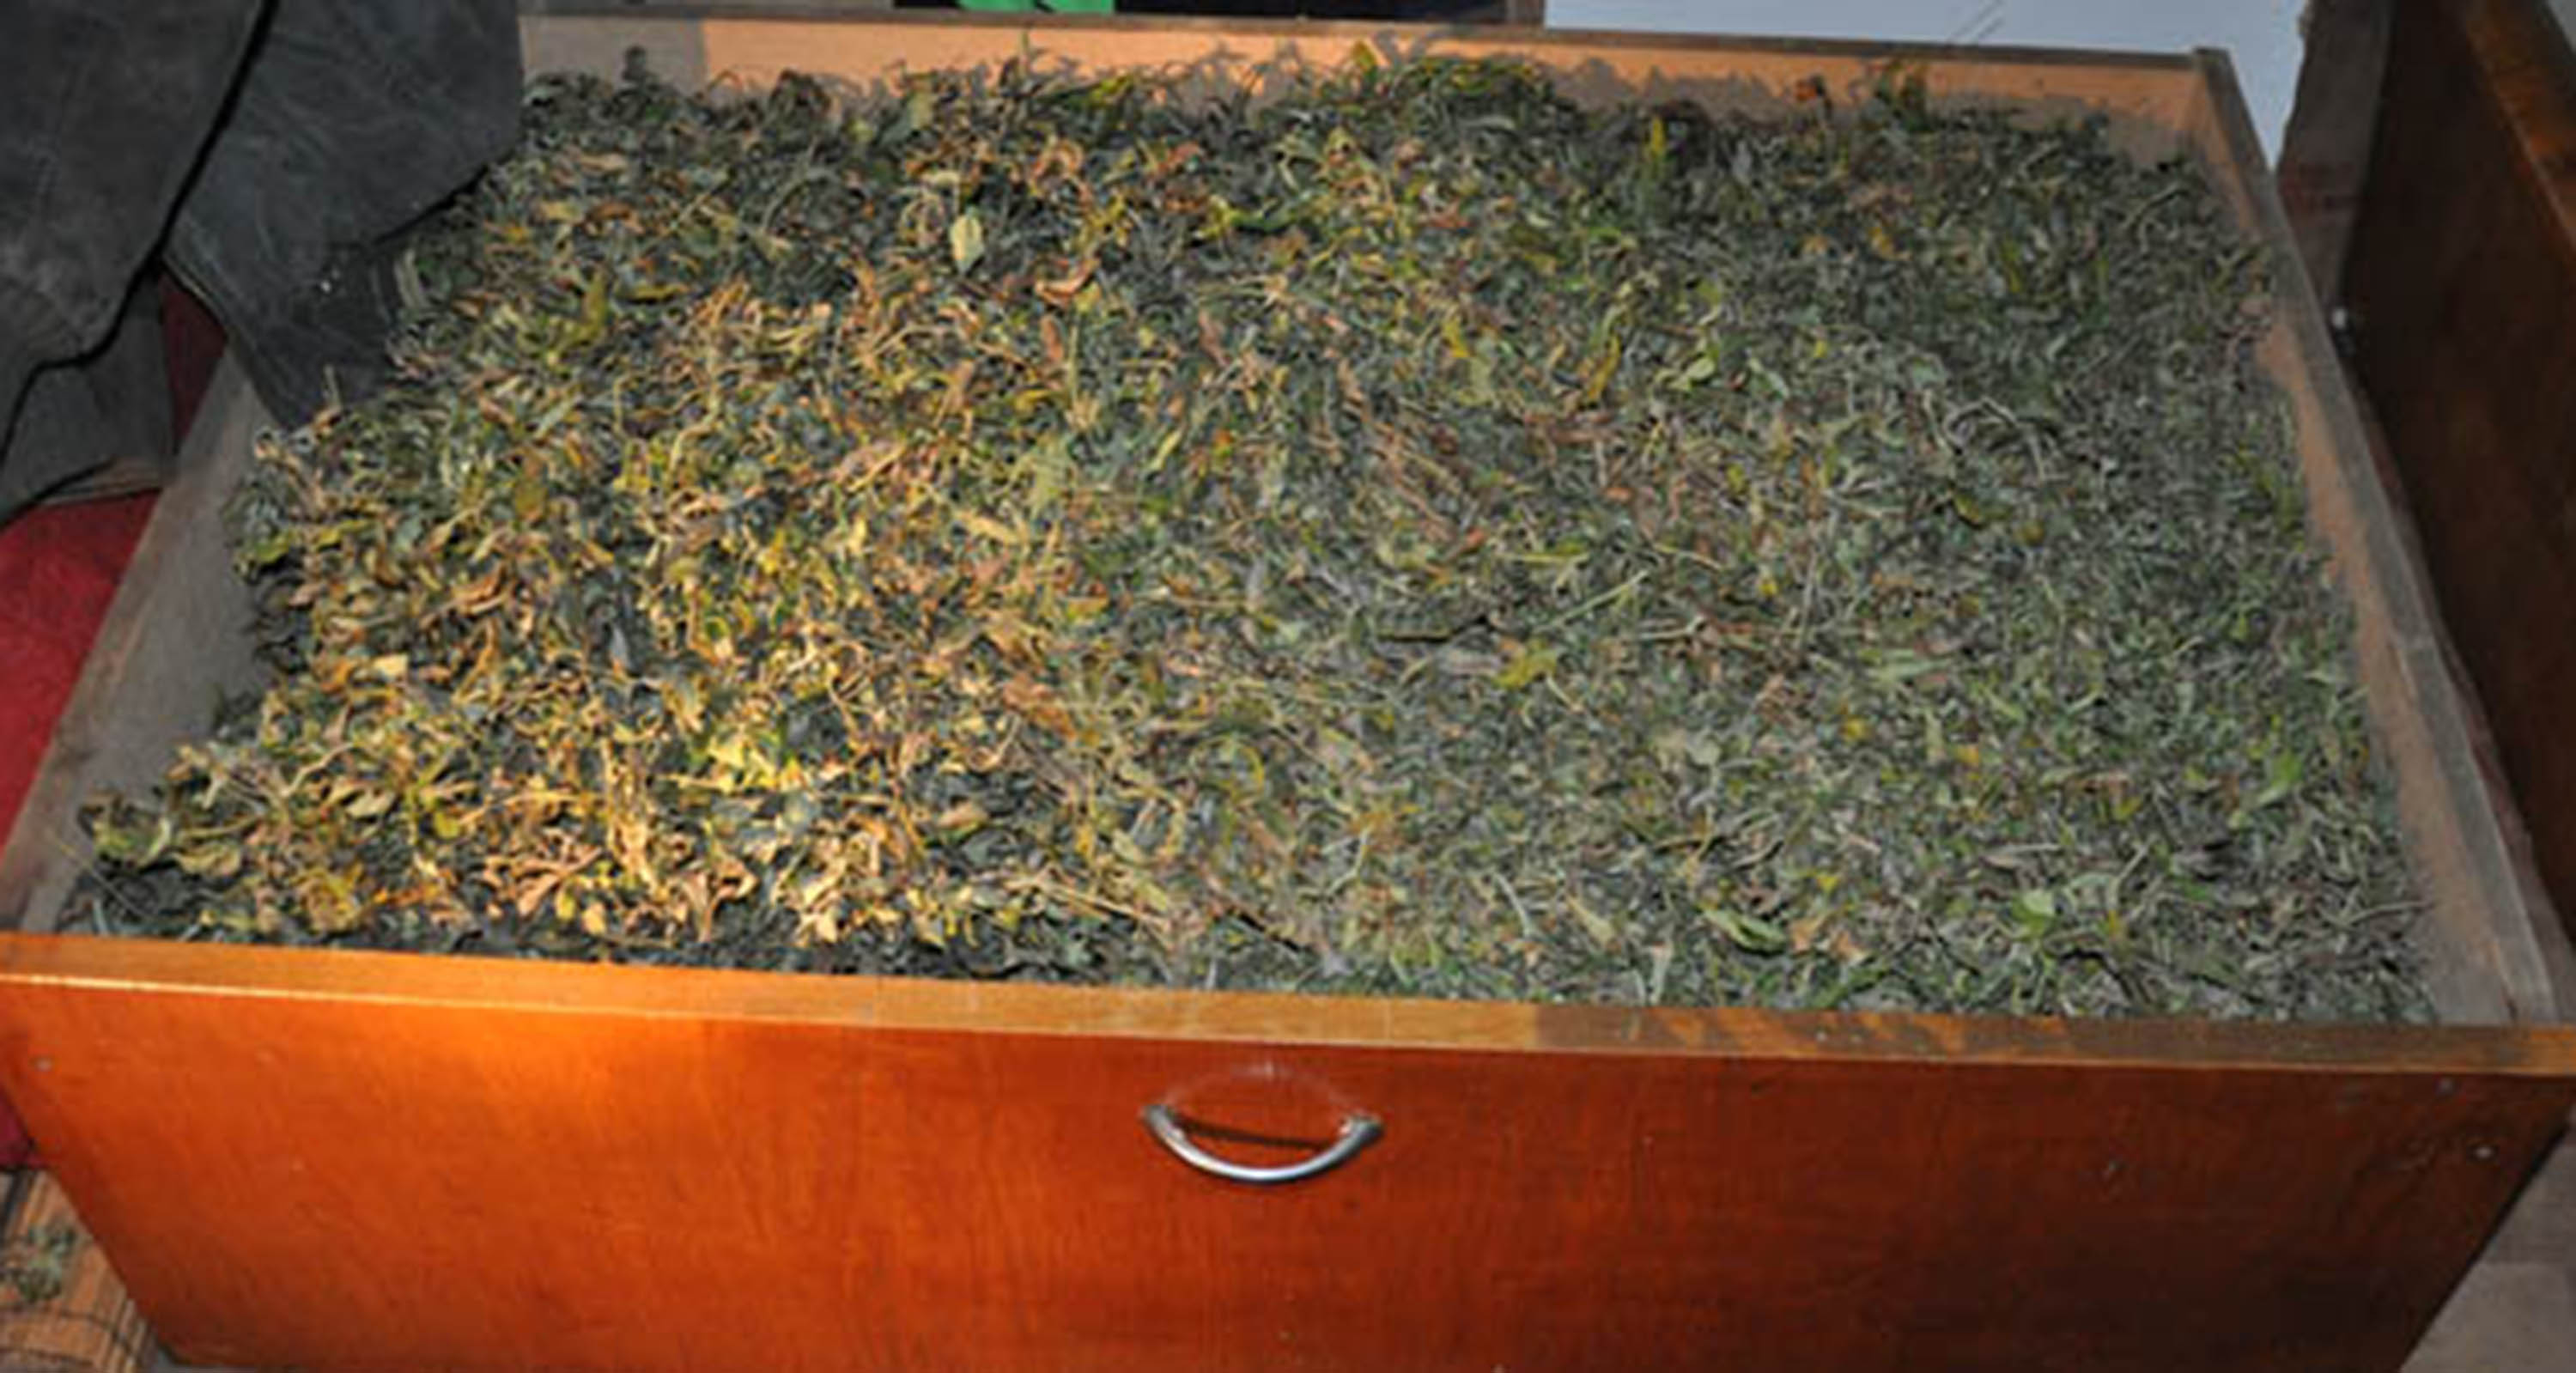 Zaplena više od osam kilograma marihuane